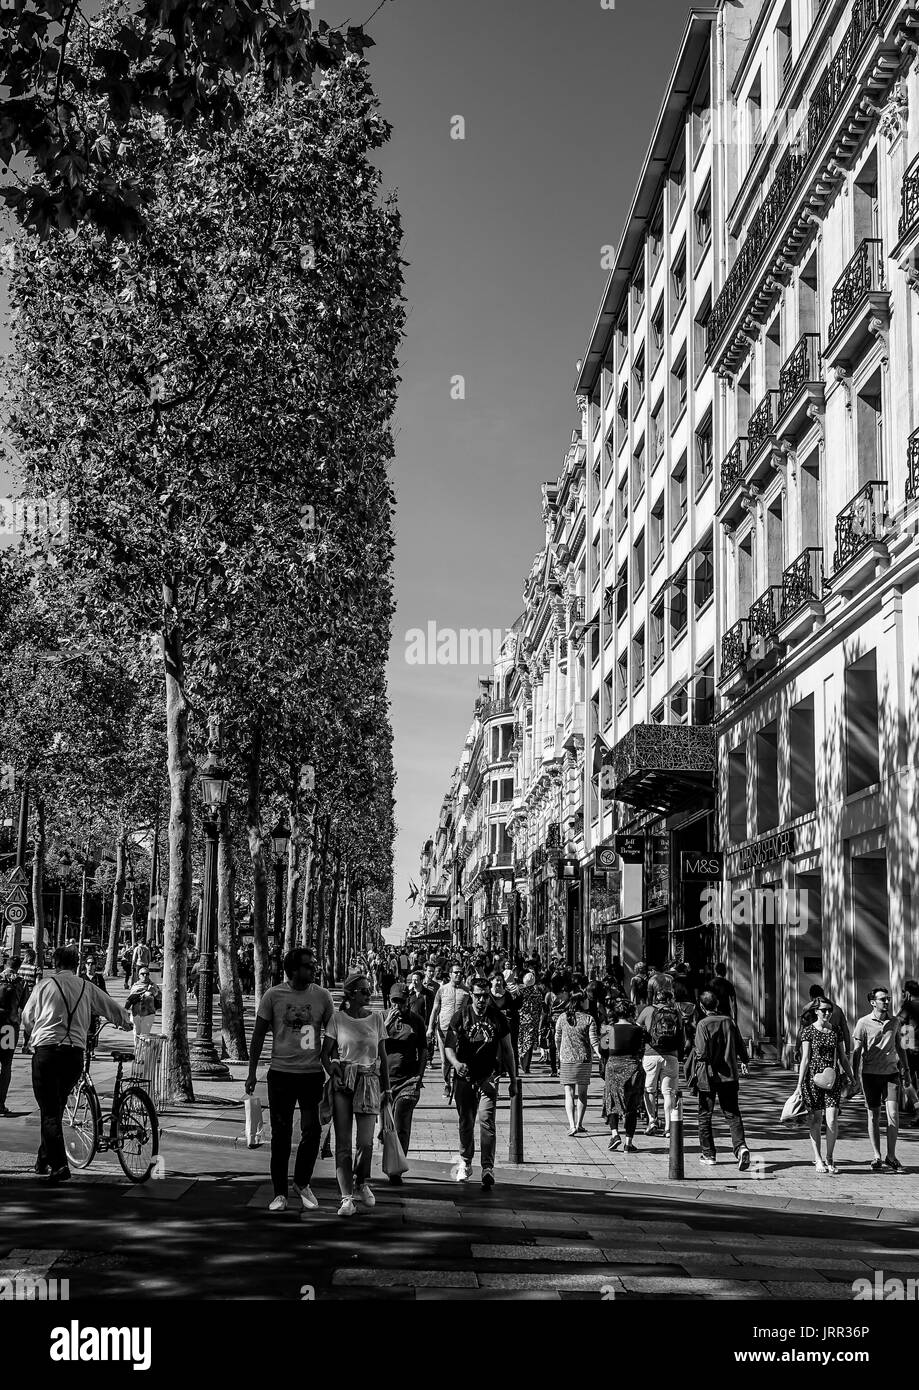 Die belebten Gegend von Champs Elysees Boulevard in Paris - Paris/Frankreich - 24. SEPTEMBER 2017 Stockfoto